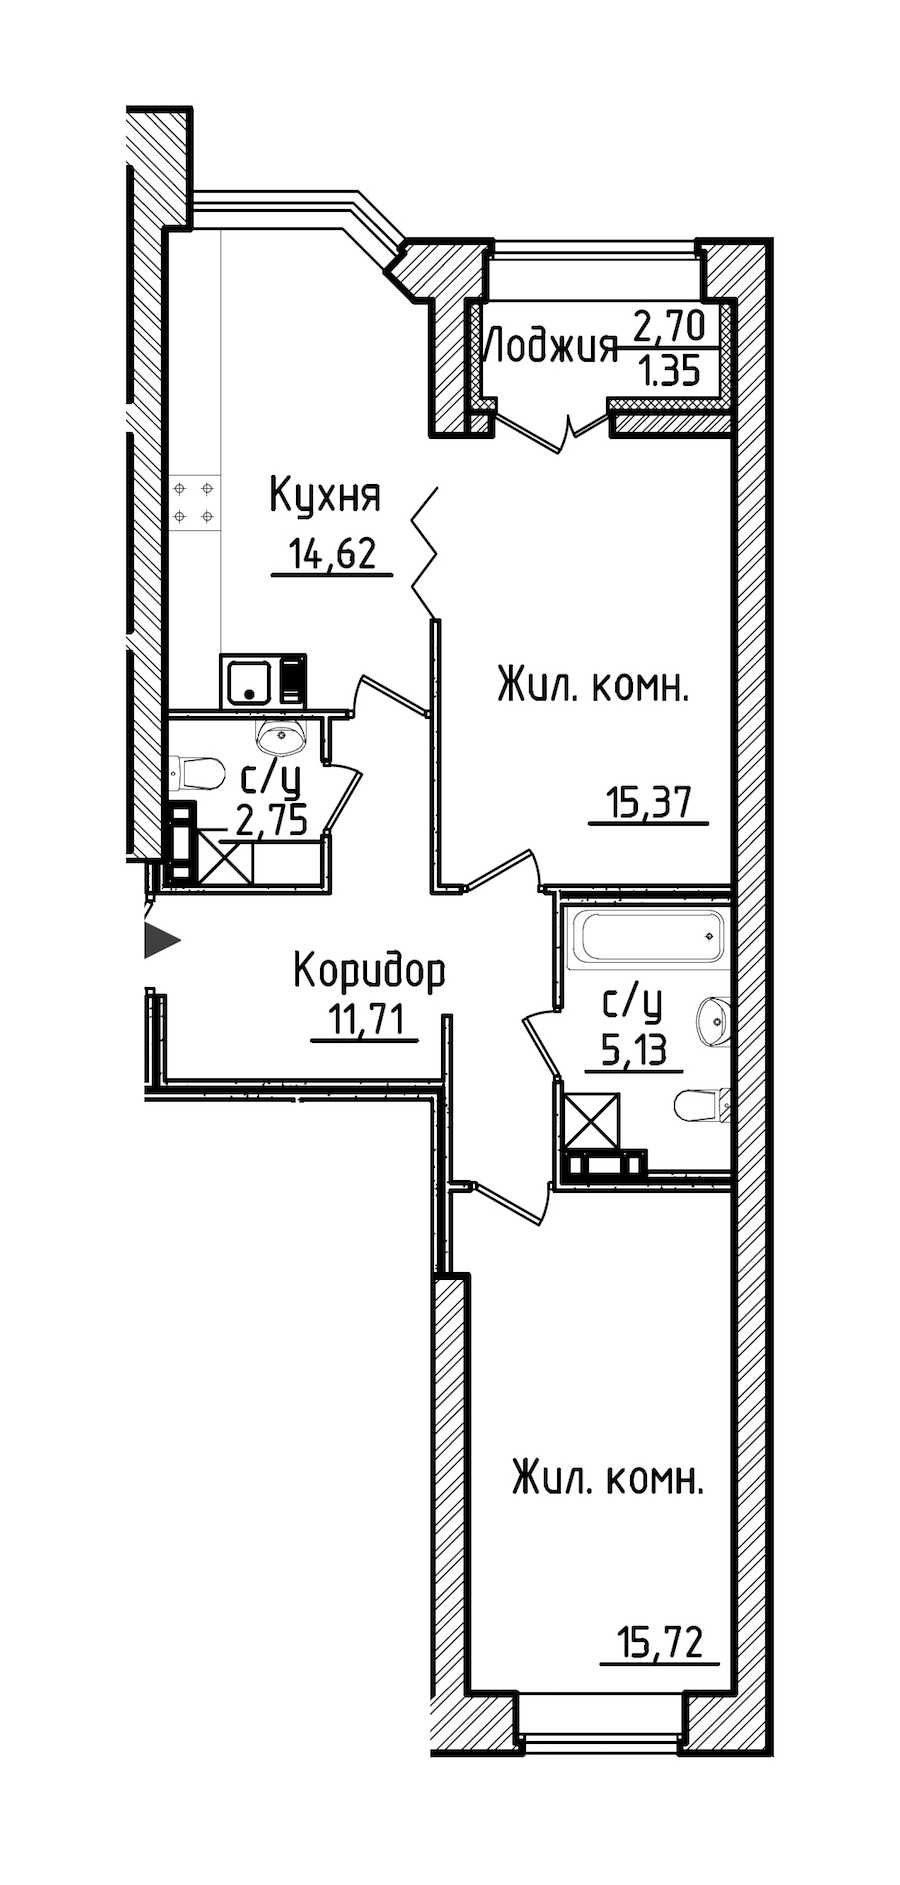 Двухкомнатная квартира в Строительный трест: площадь 66.65 м2 , этаж: 3 – купить в Санкт-Петербурге